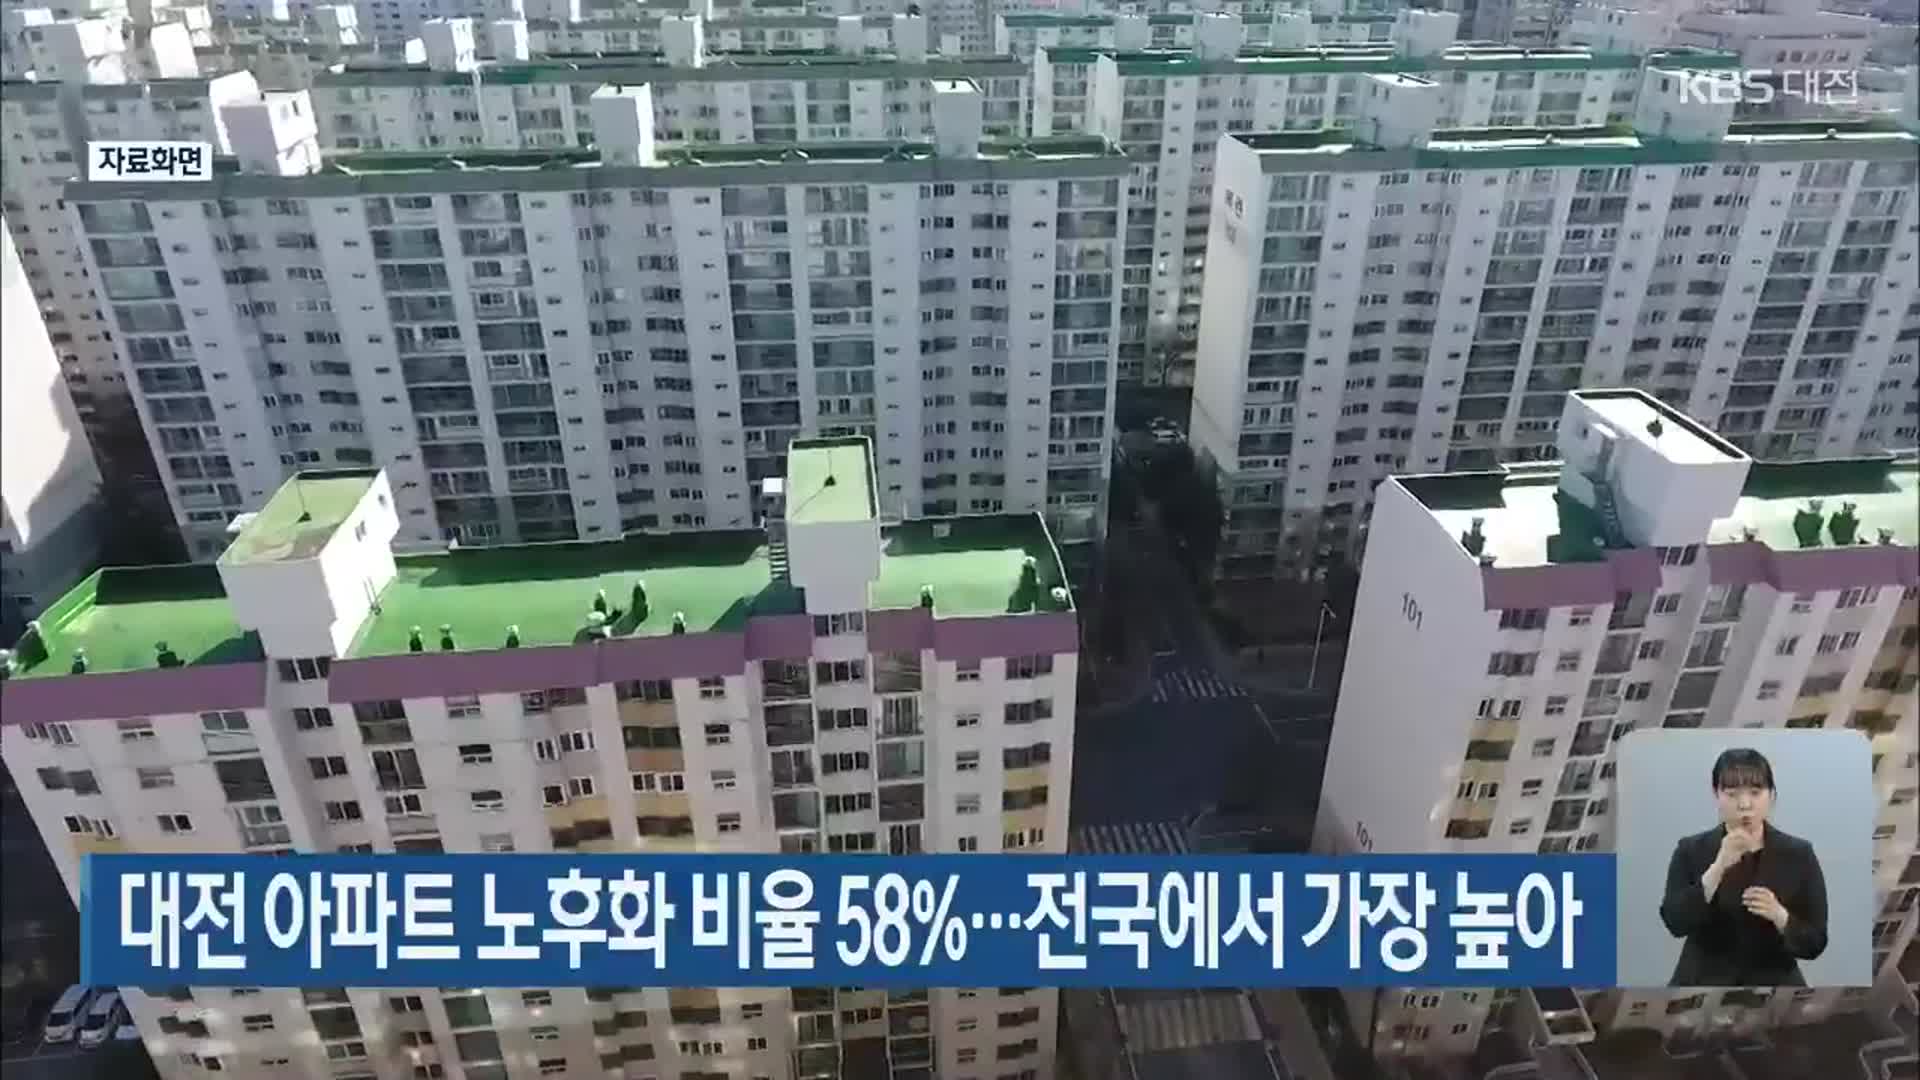 대전 아파트 노후화 비율 58%…전국에서 가장 높아